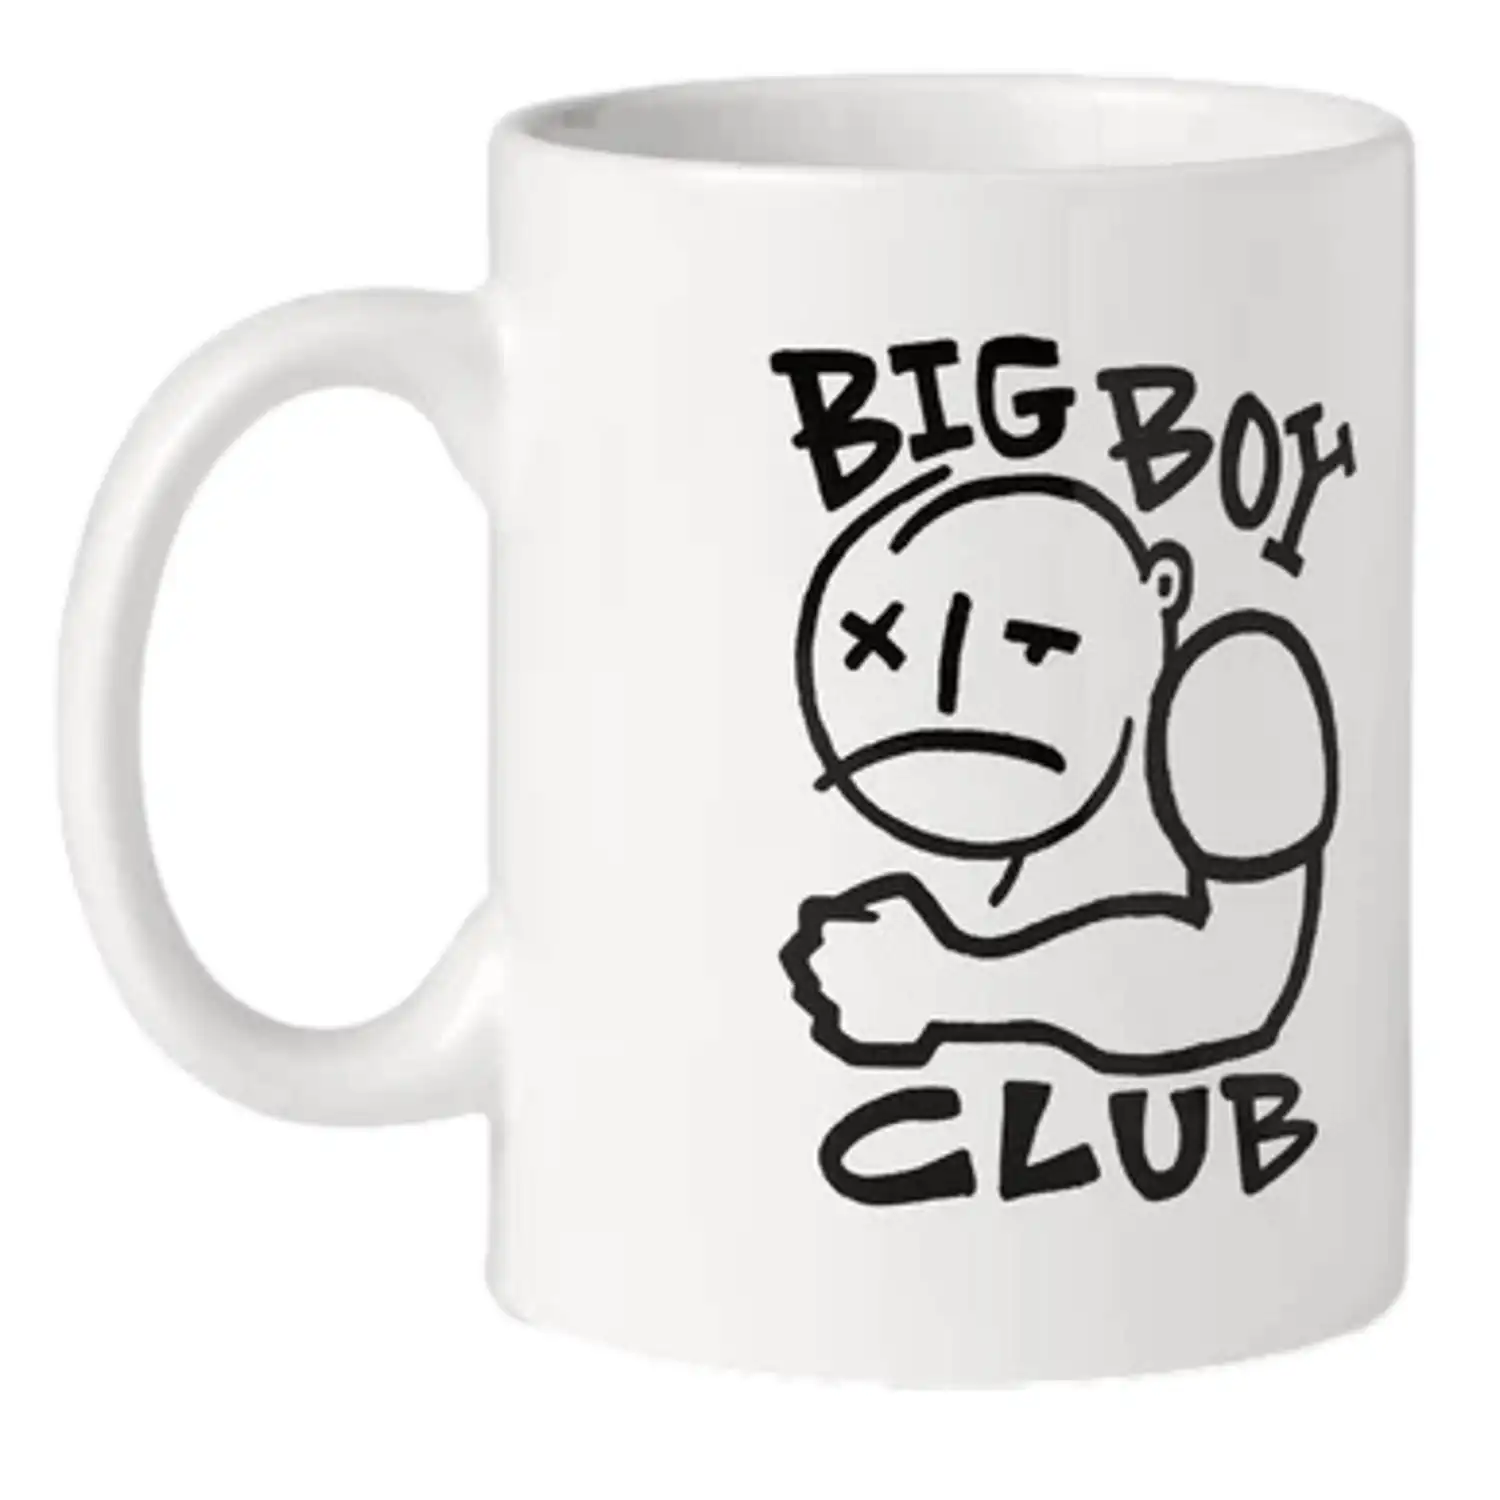 Polar Big Boy Club Mug